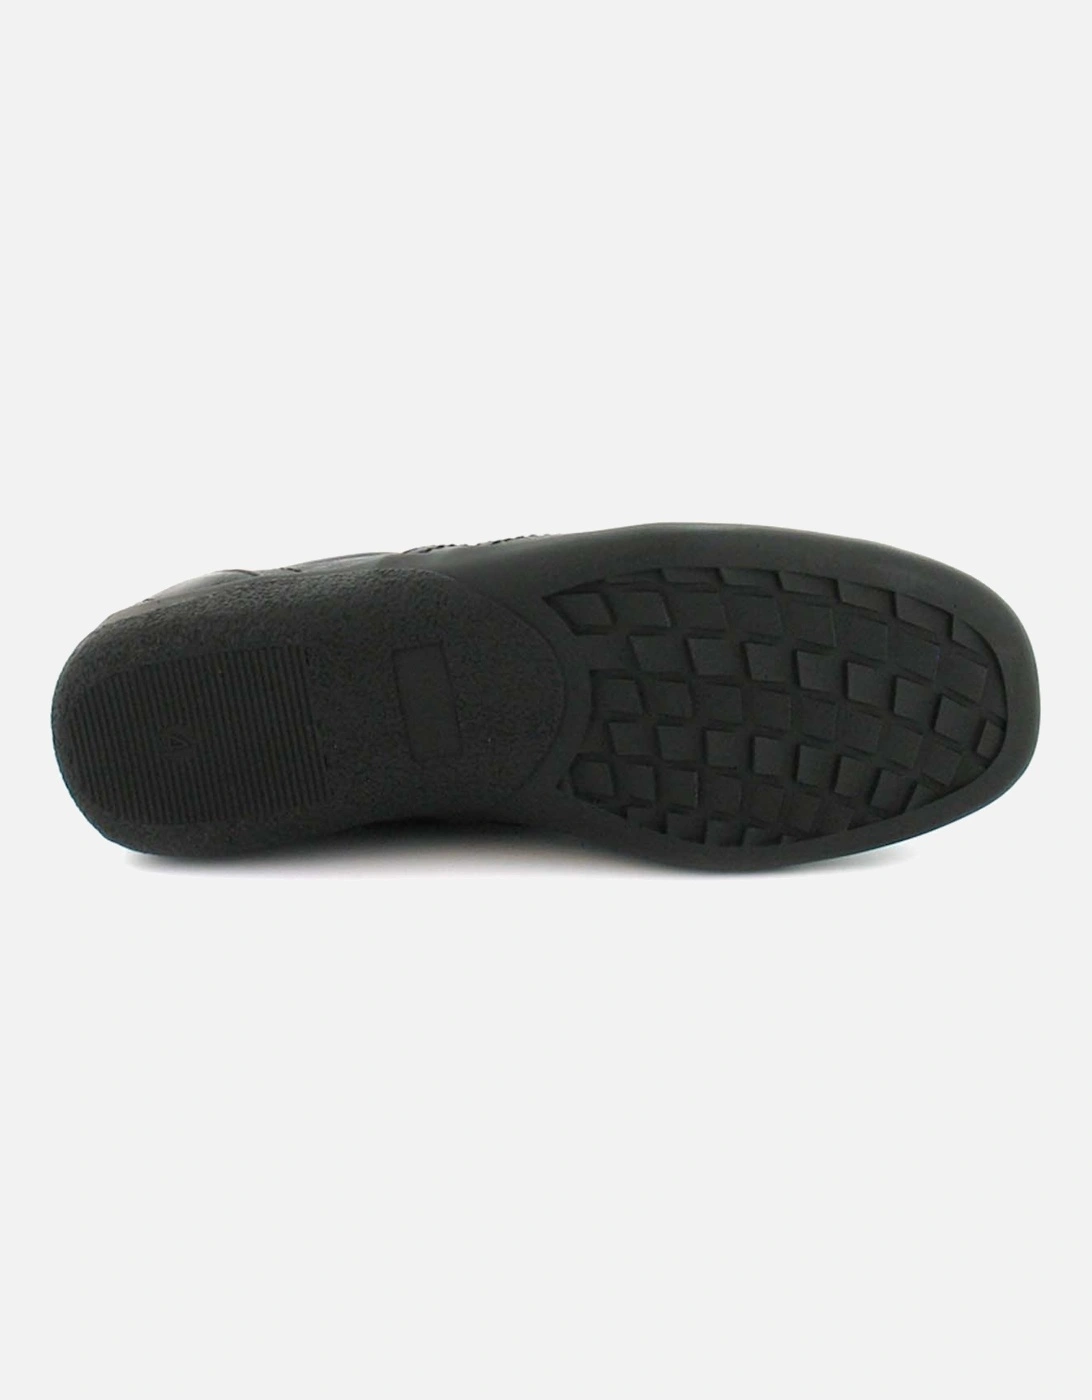 Womens Shoes Flat Valary Lace Up black UK Size